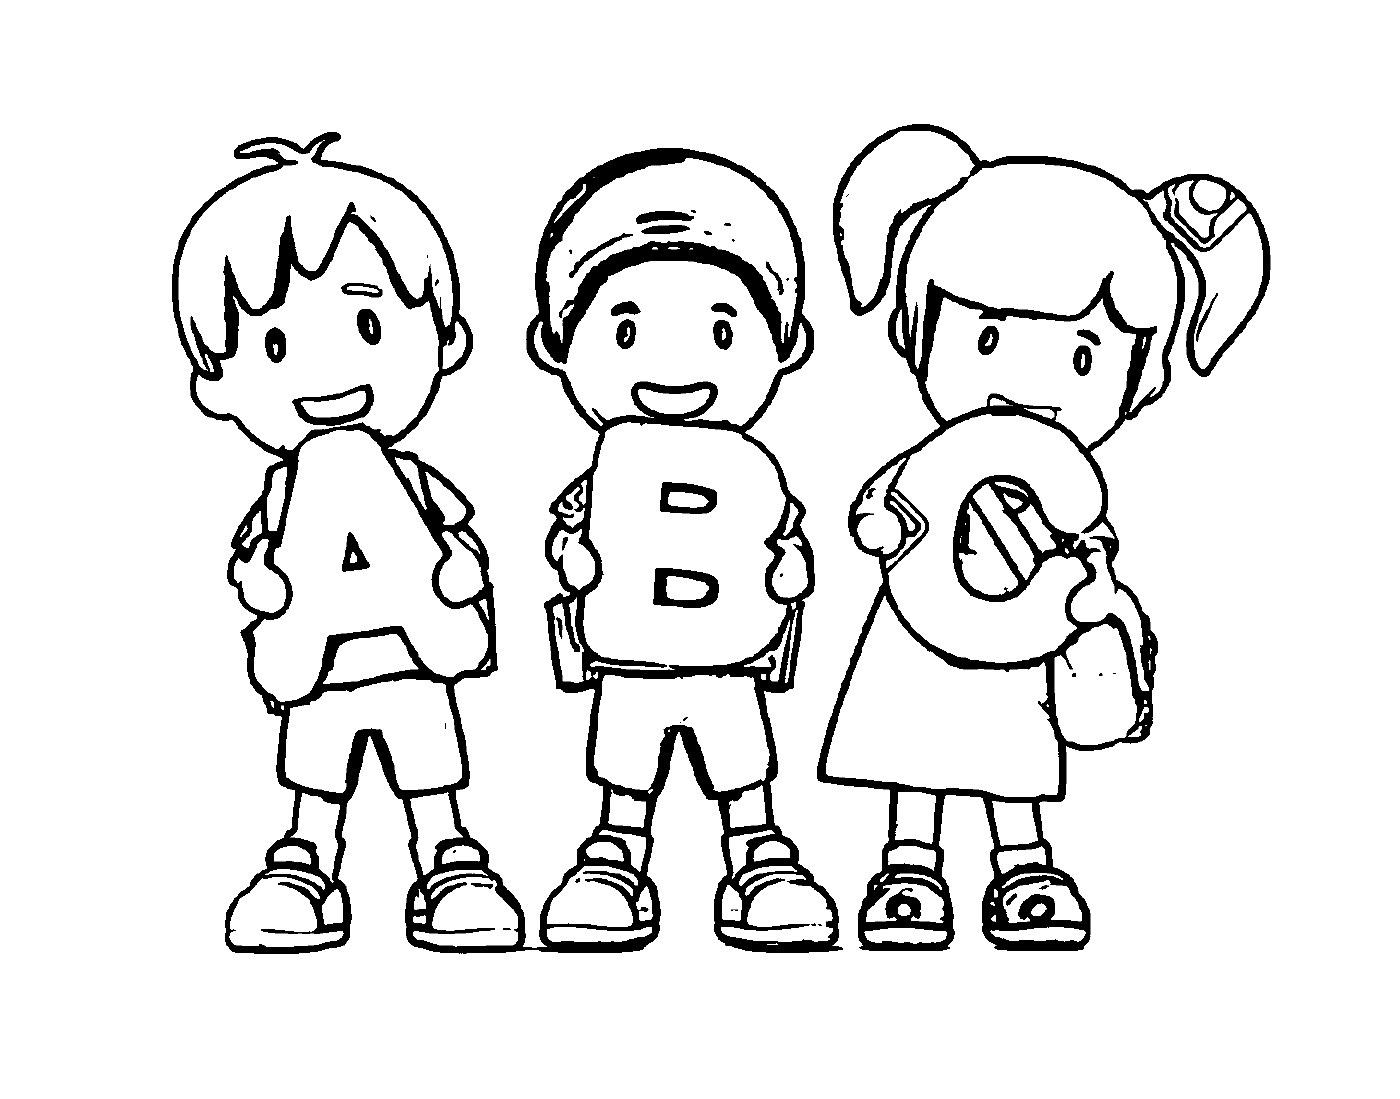  الأطفال الذين لديهم رسائل من طراز ABC 